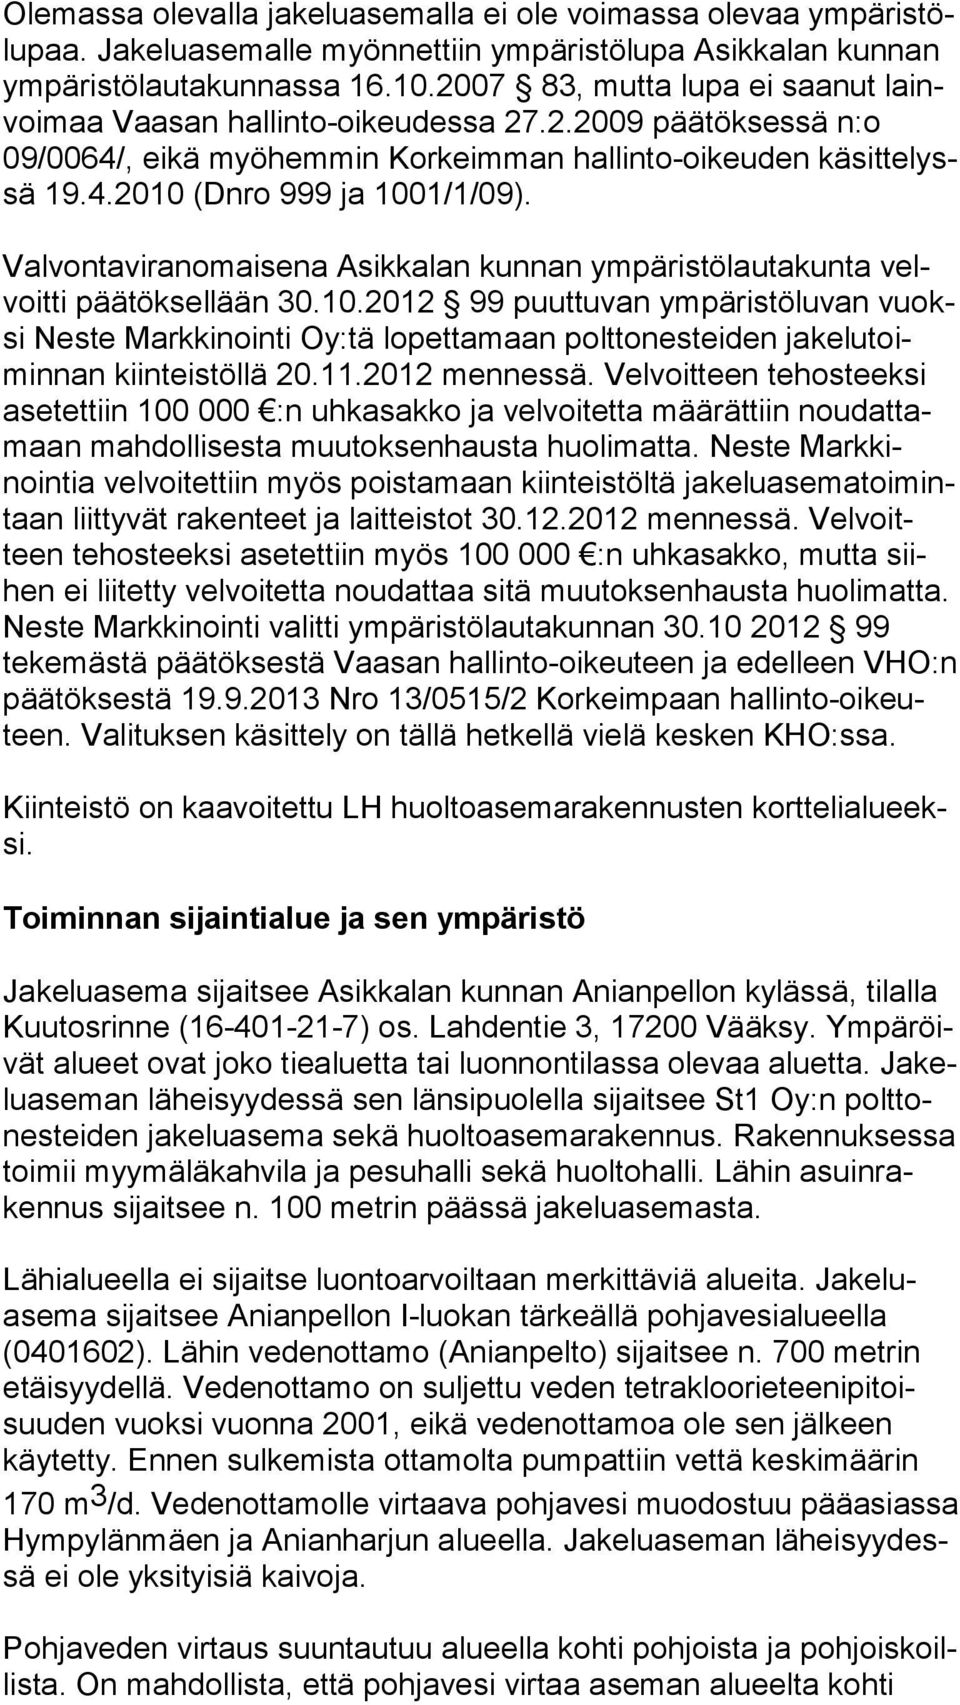 Valvontaviranomaisena Asikkalan kunnan ympäristölautakunta velvoit ti päätöksellään 30.10.